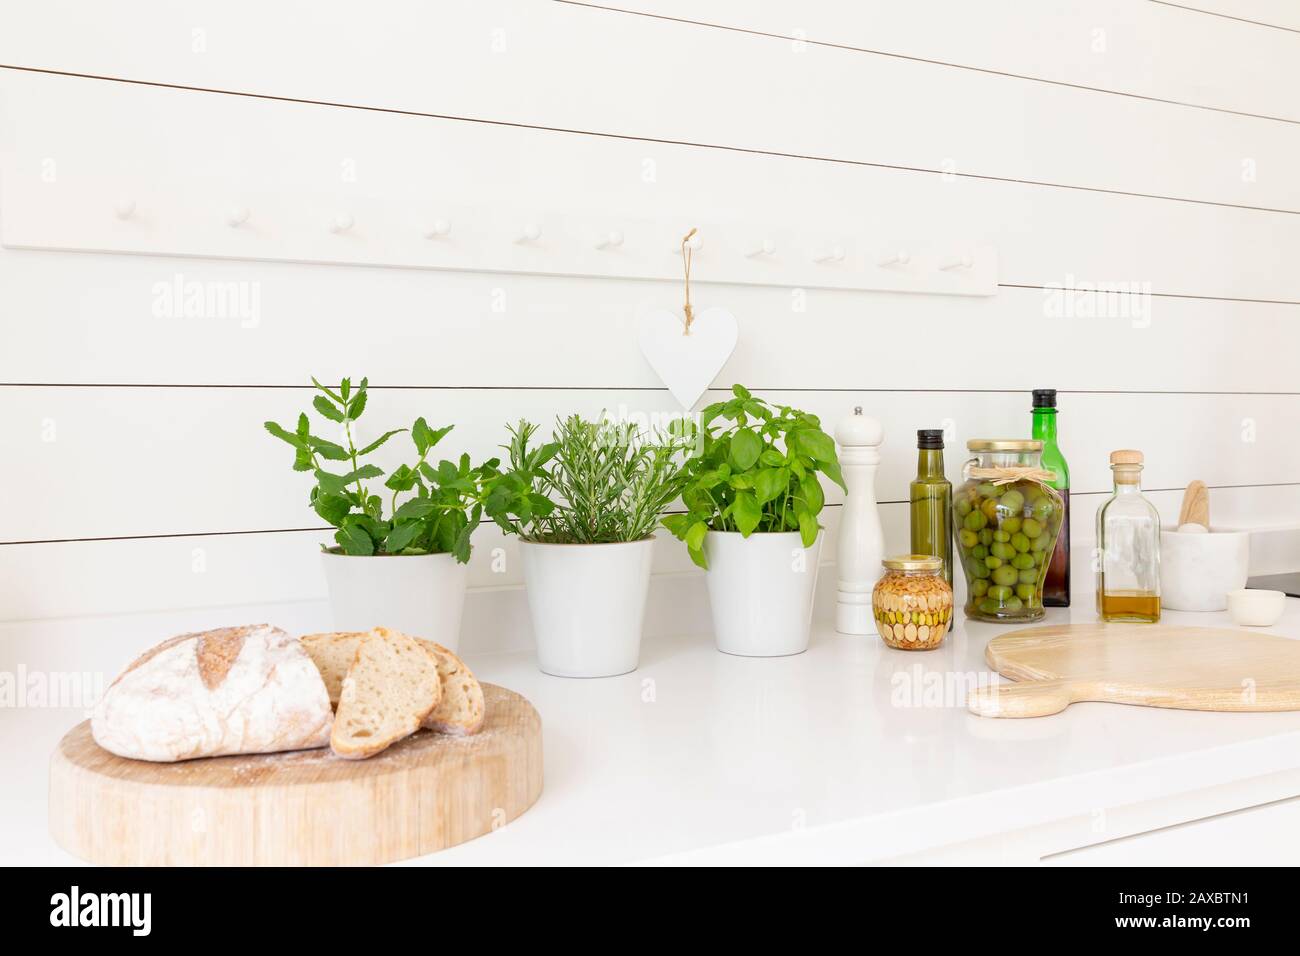 Pain maison, herbes et huiles d'olive sur le comptoir de cuisine Banque D'Images